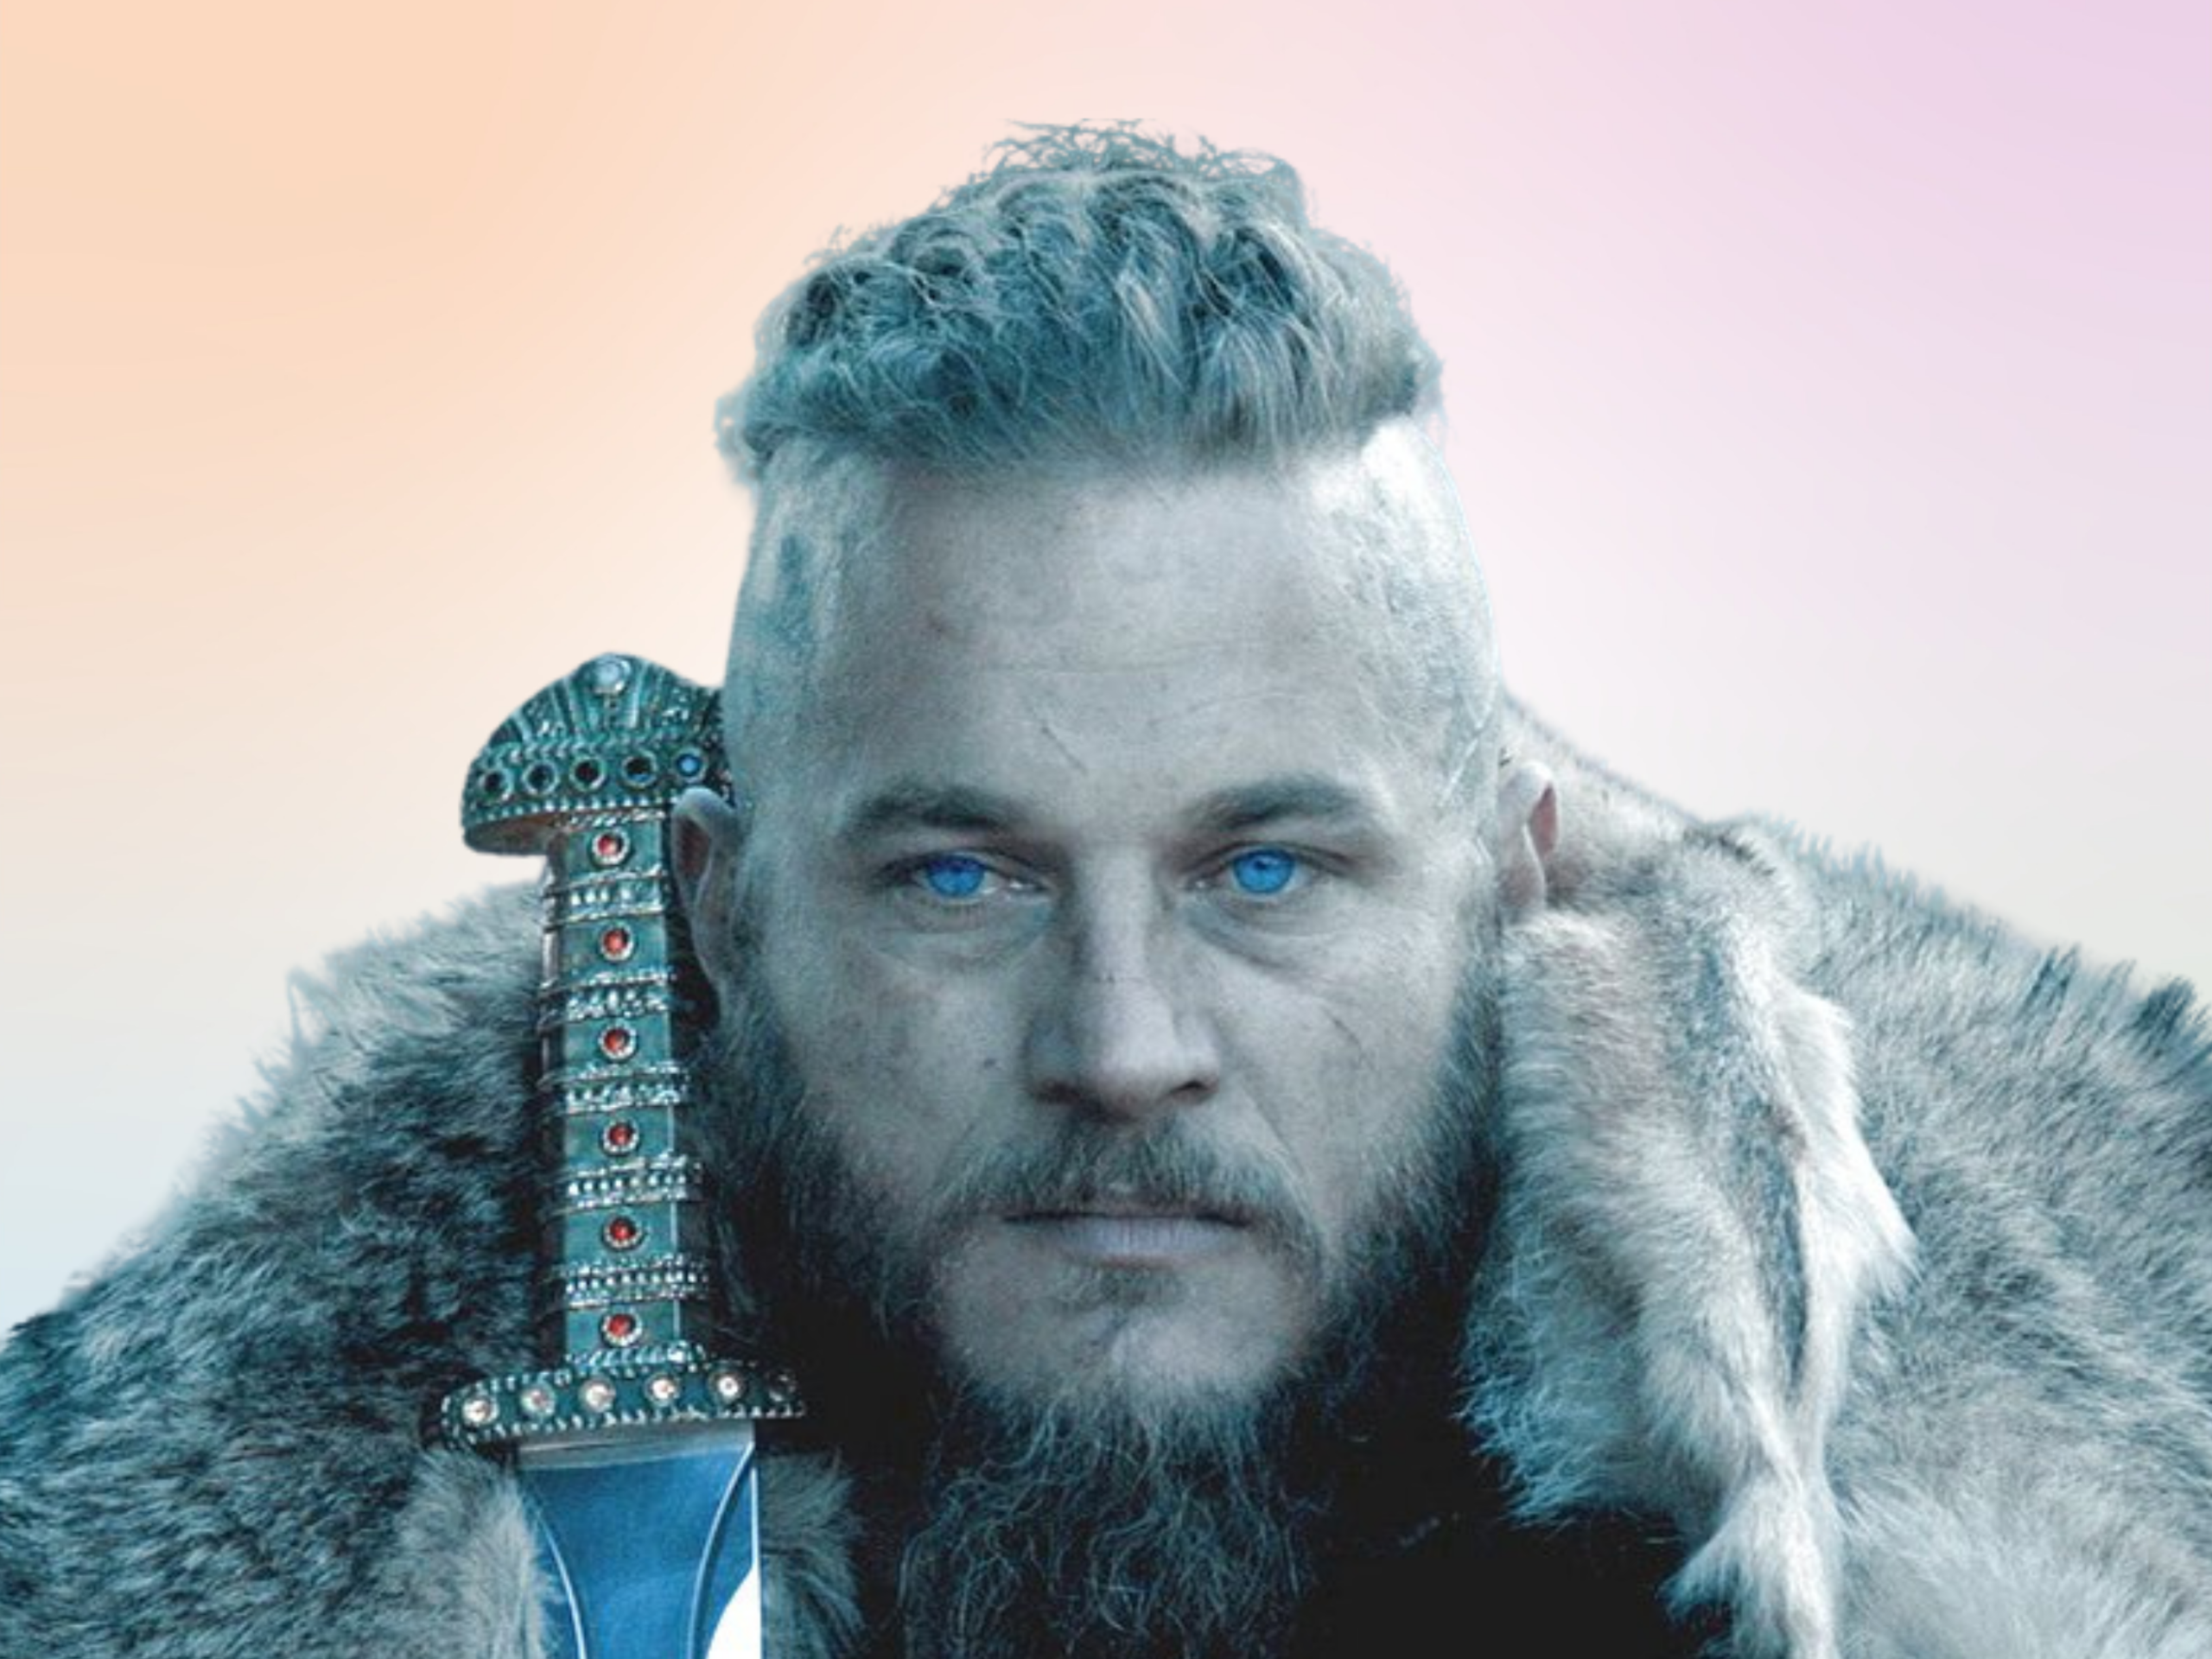 Ragnar | Ragnar hair, Vikings, Ragnar lothbrok vikings